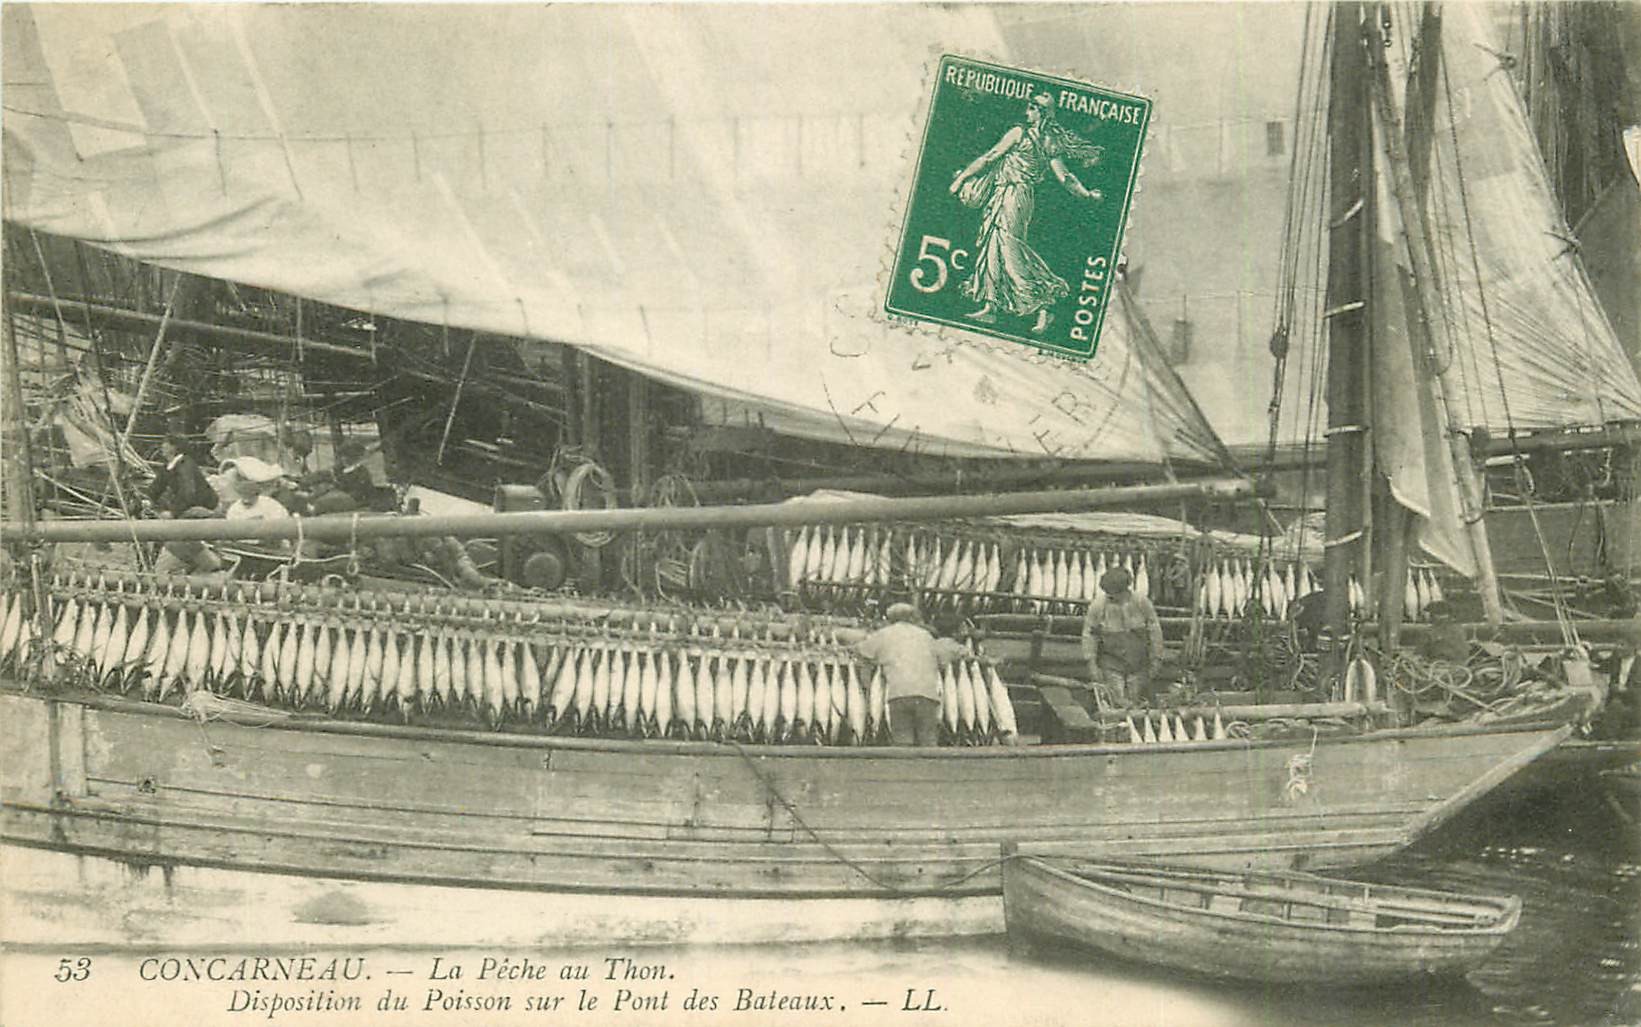 29 CONCARNEAU. La Pêche au Thon disposition du Poisson sur le Pont des Bateaux